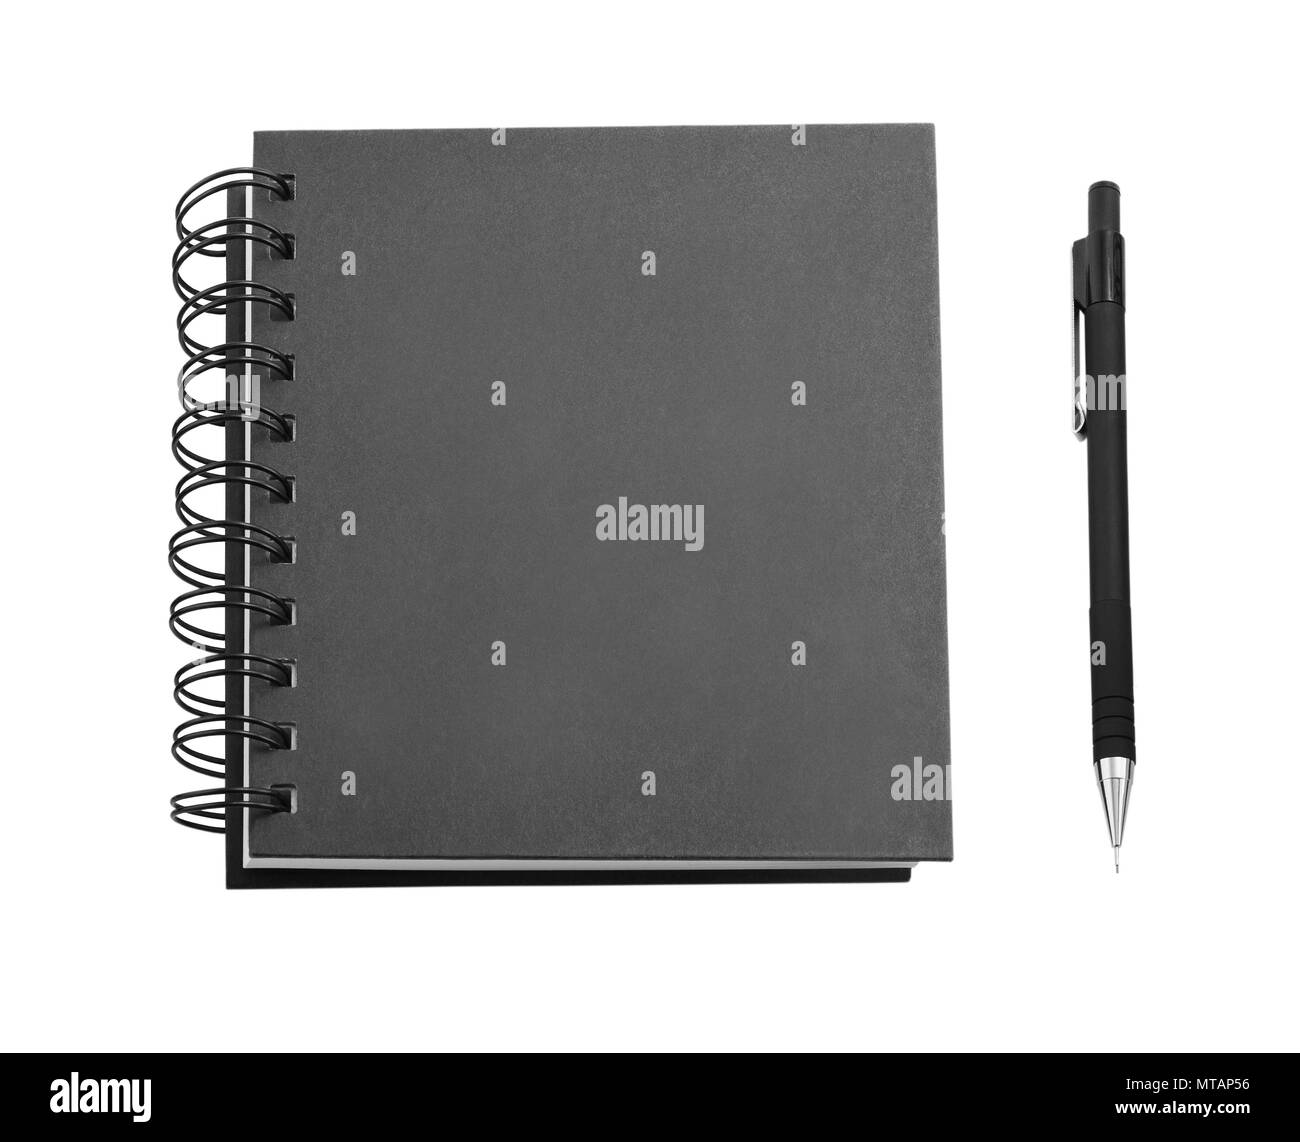 Notebook nero e matita isolati su sfondo bianco, identity design, modelli aziendali, azienda stile, set di articoli di cancelleria Foto Stock